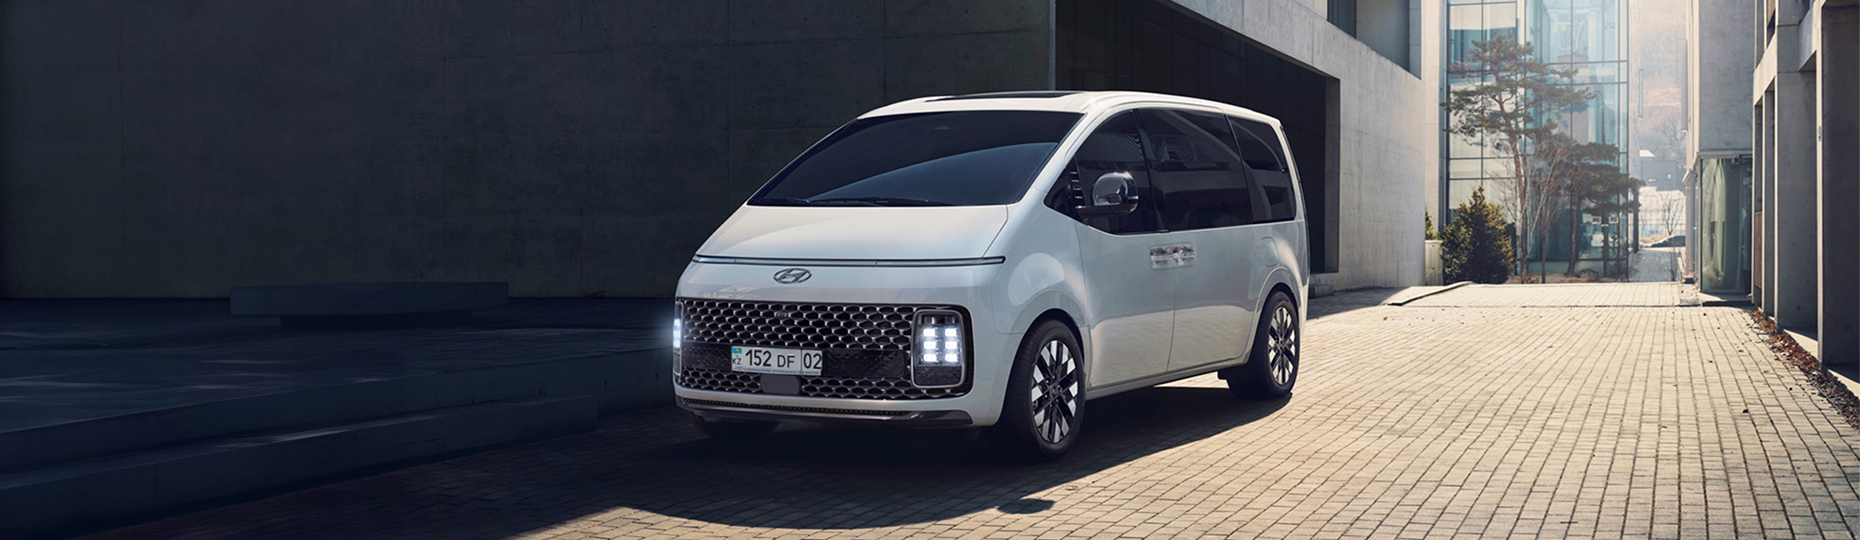 Купить новый Hyundai Staria 2022-2023 у официального дилера в Шымкенте